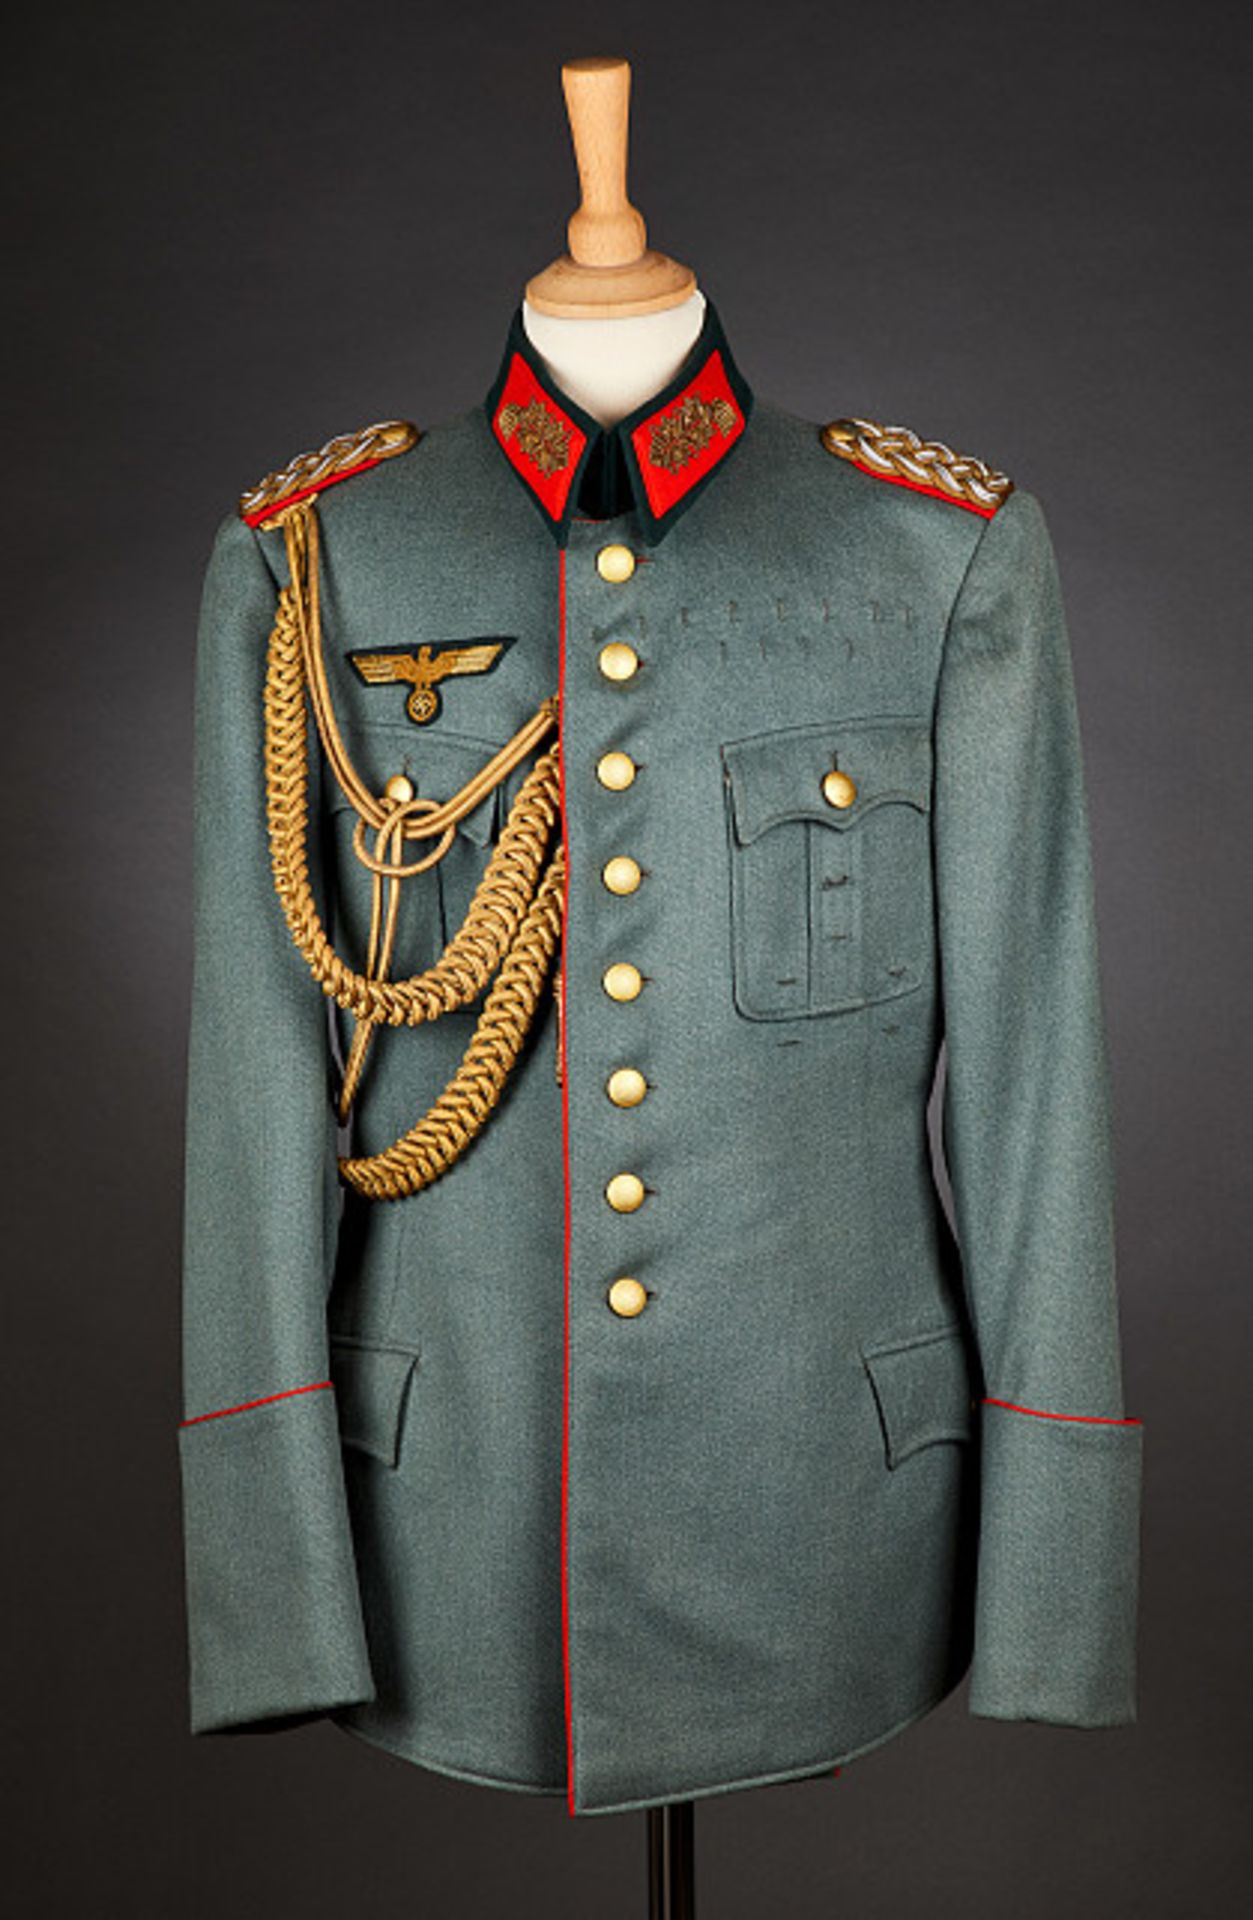 Deutsches Reich 1933 - 1945 - Heer - Generalität : Army General's Uniform Grouping. Army Uniform